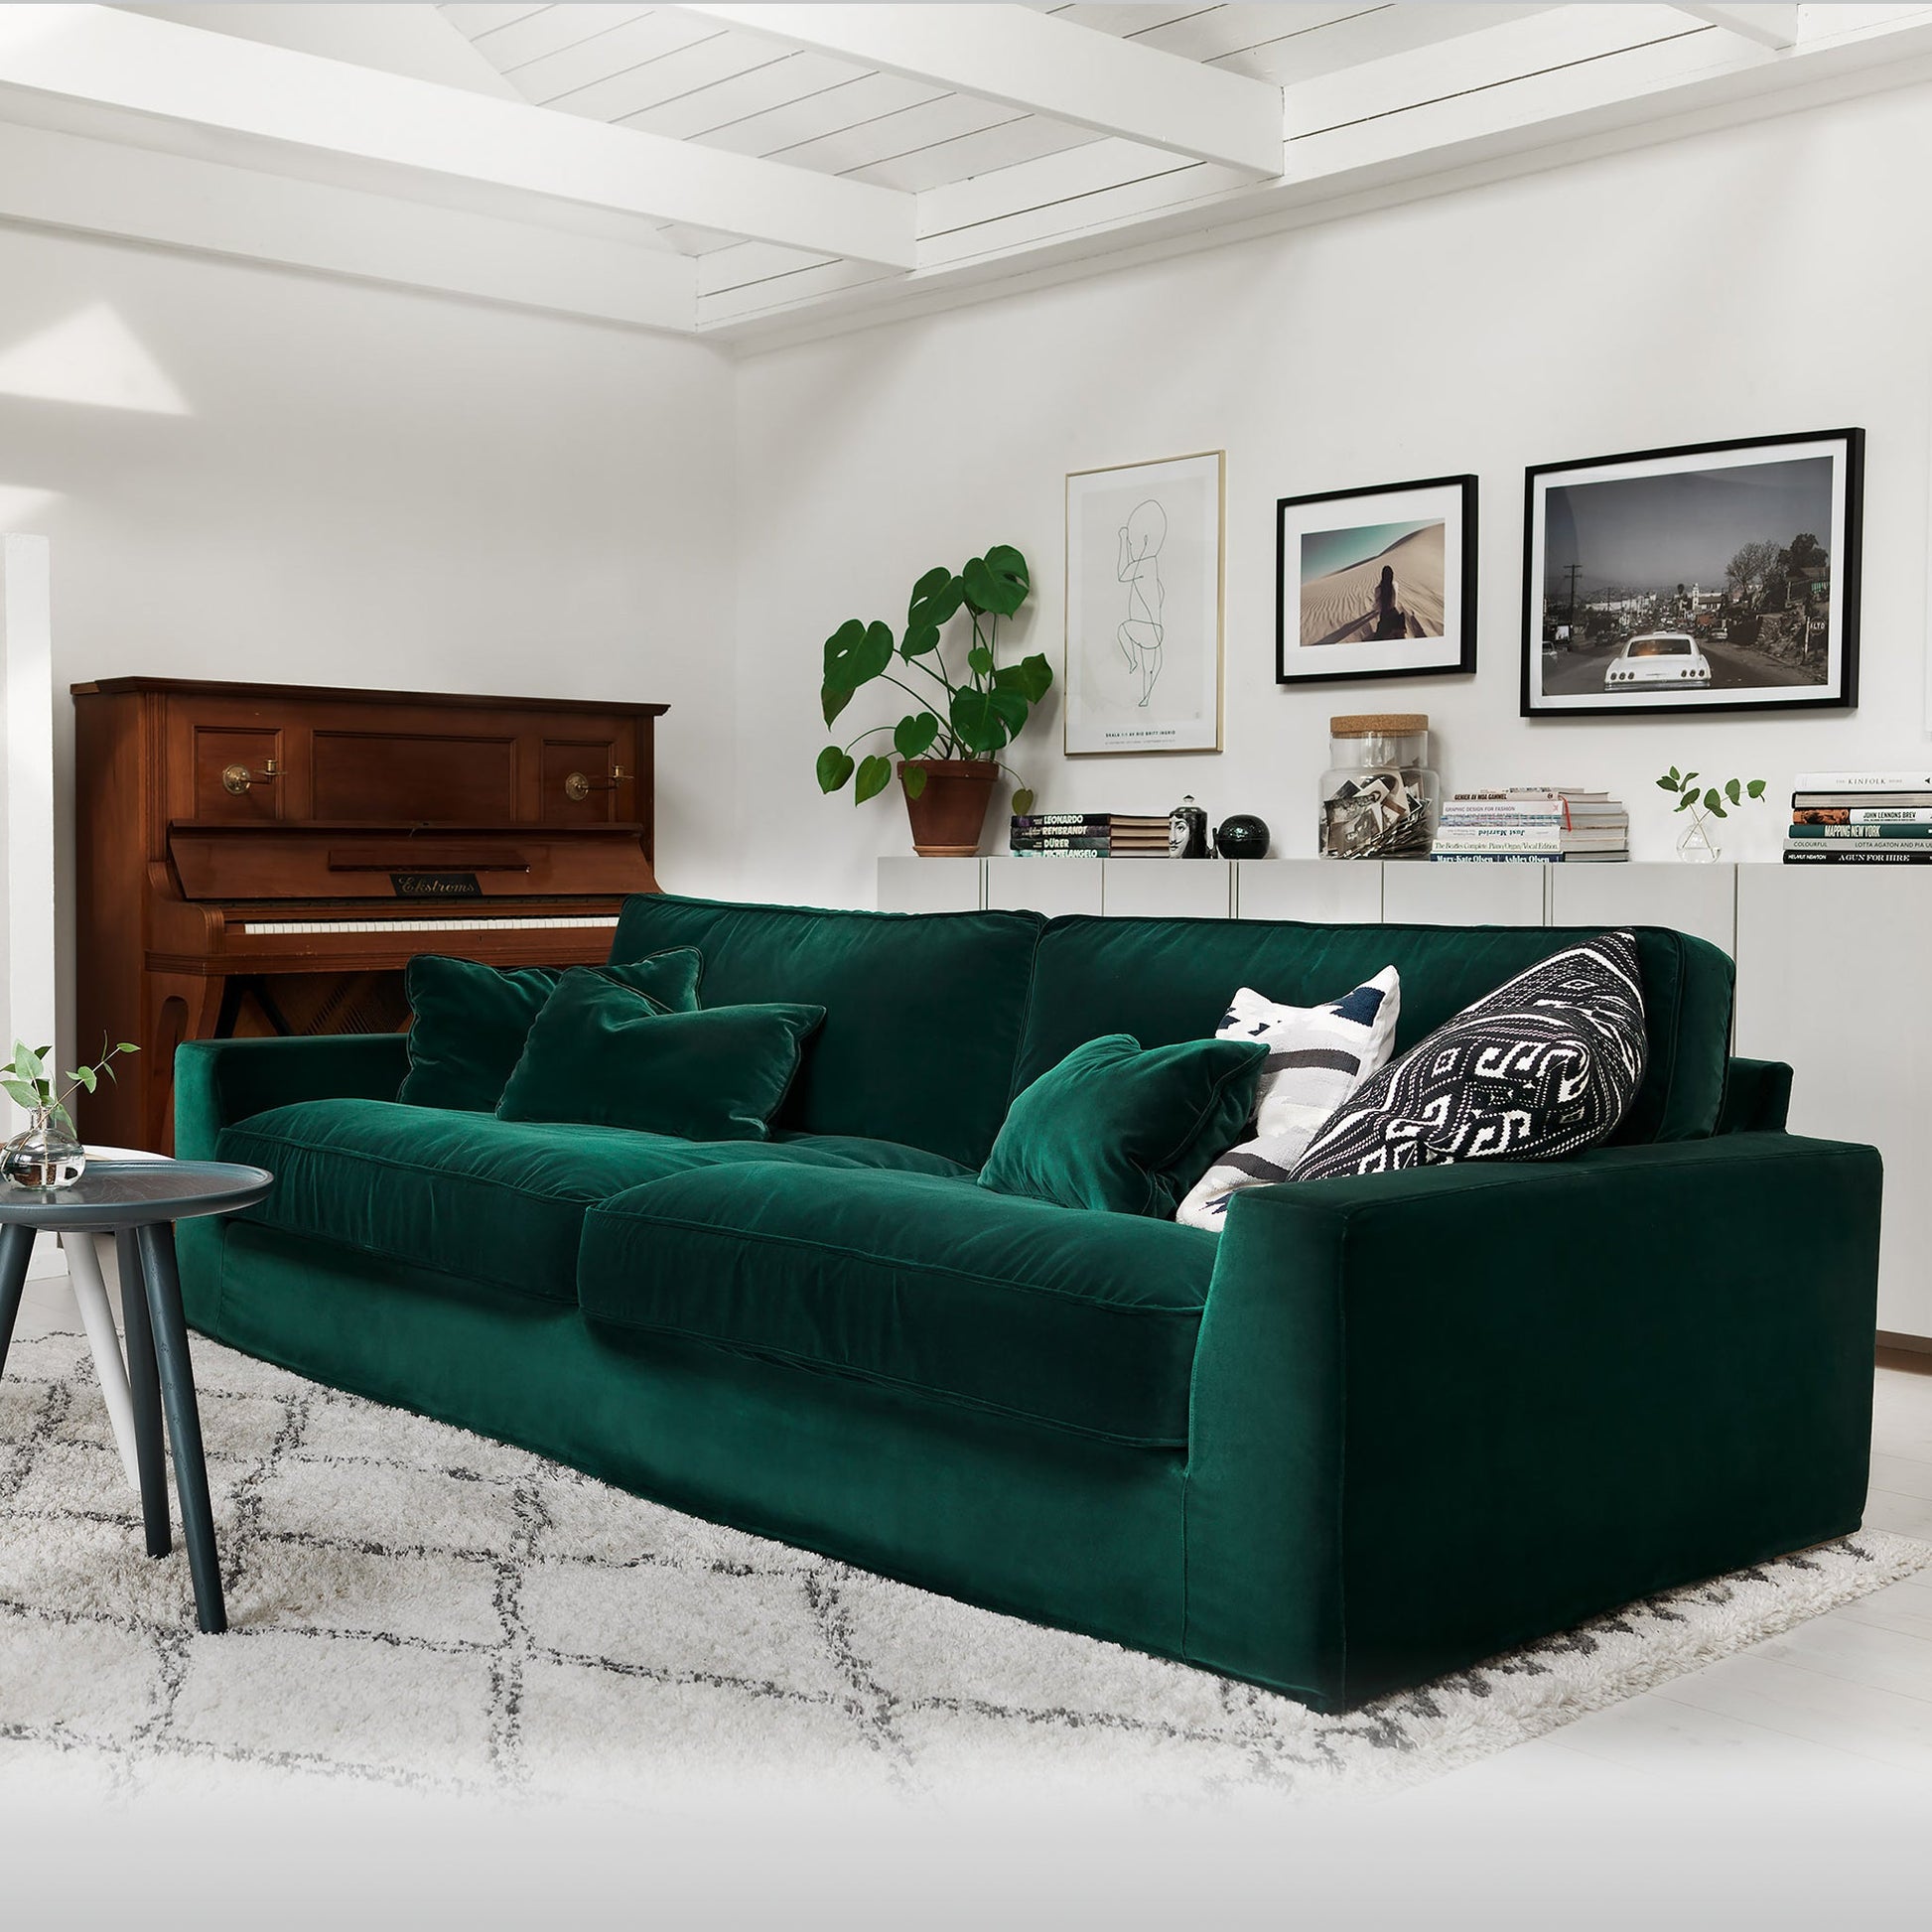 New York 4-seter XL Lario Dark Green, en del av kategorien 4-seter - At Home Interiør